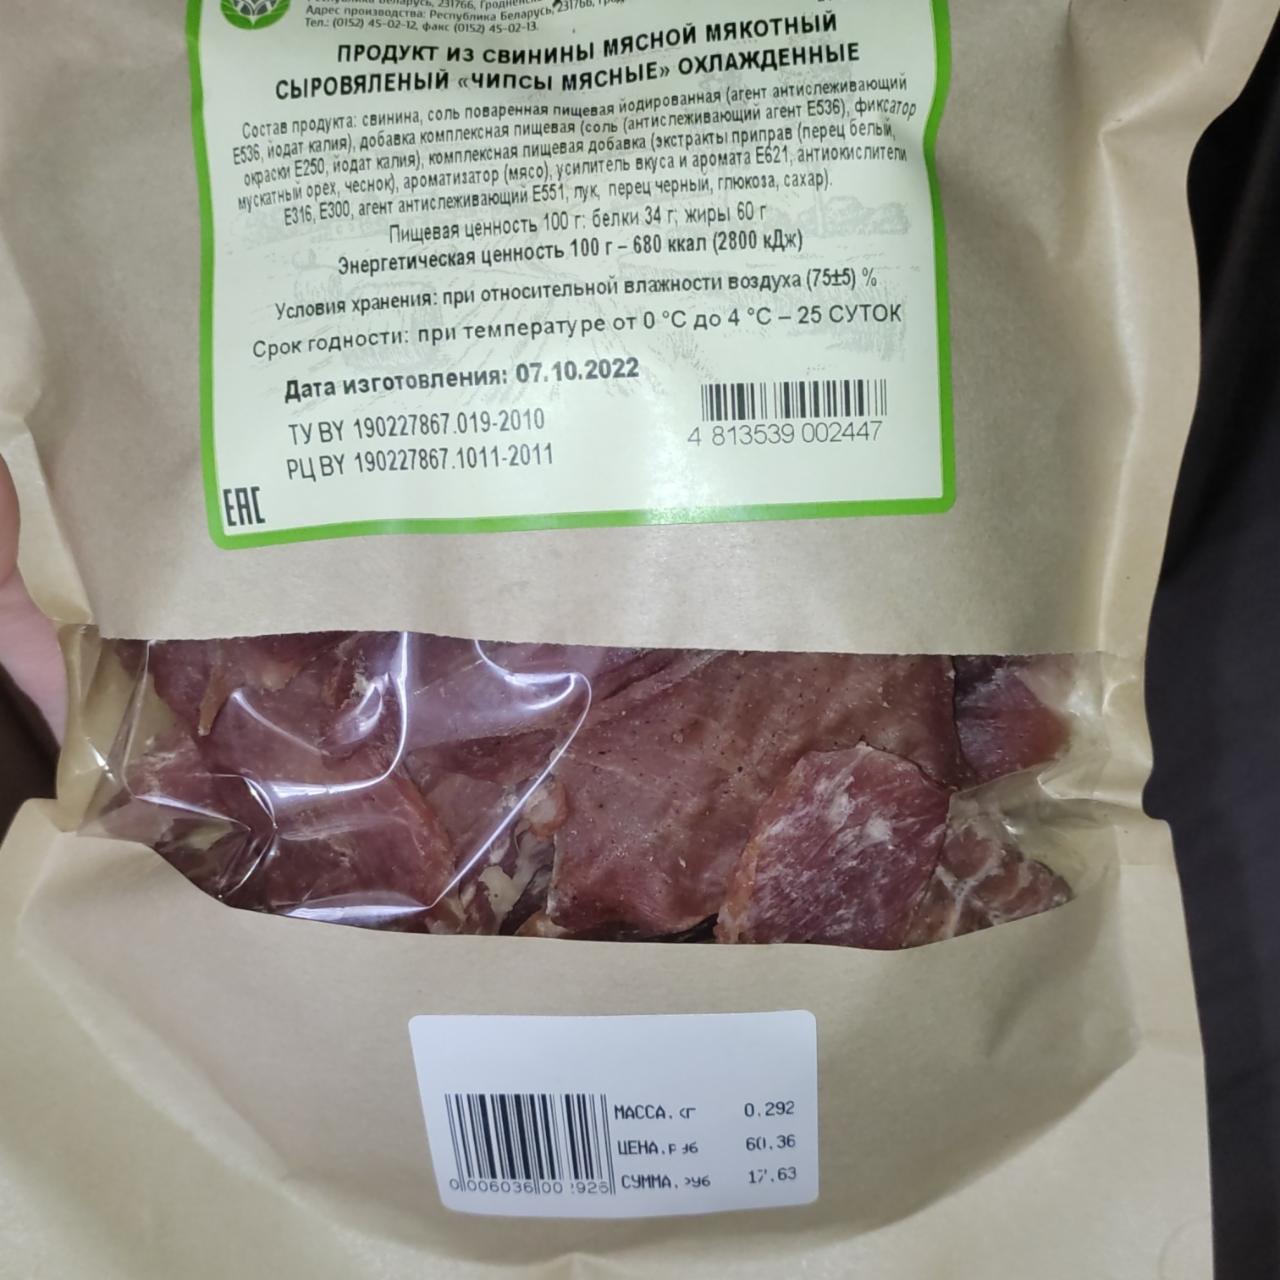 Фото - продукт из свинины мясной мякотный сыровяленый чипсы мясные Сельскохозяйственный производственный кооператив имени И.П.Сенько